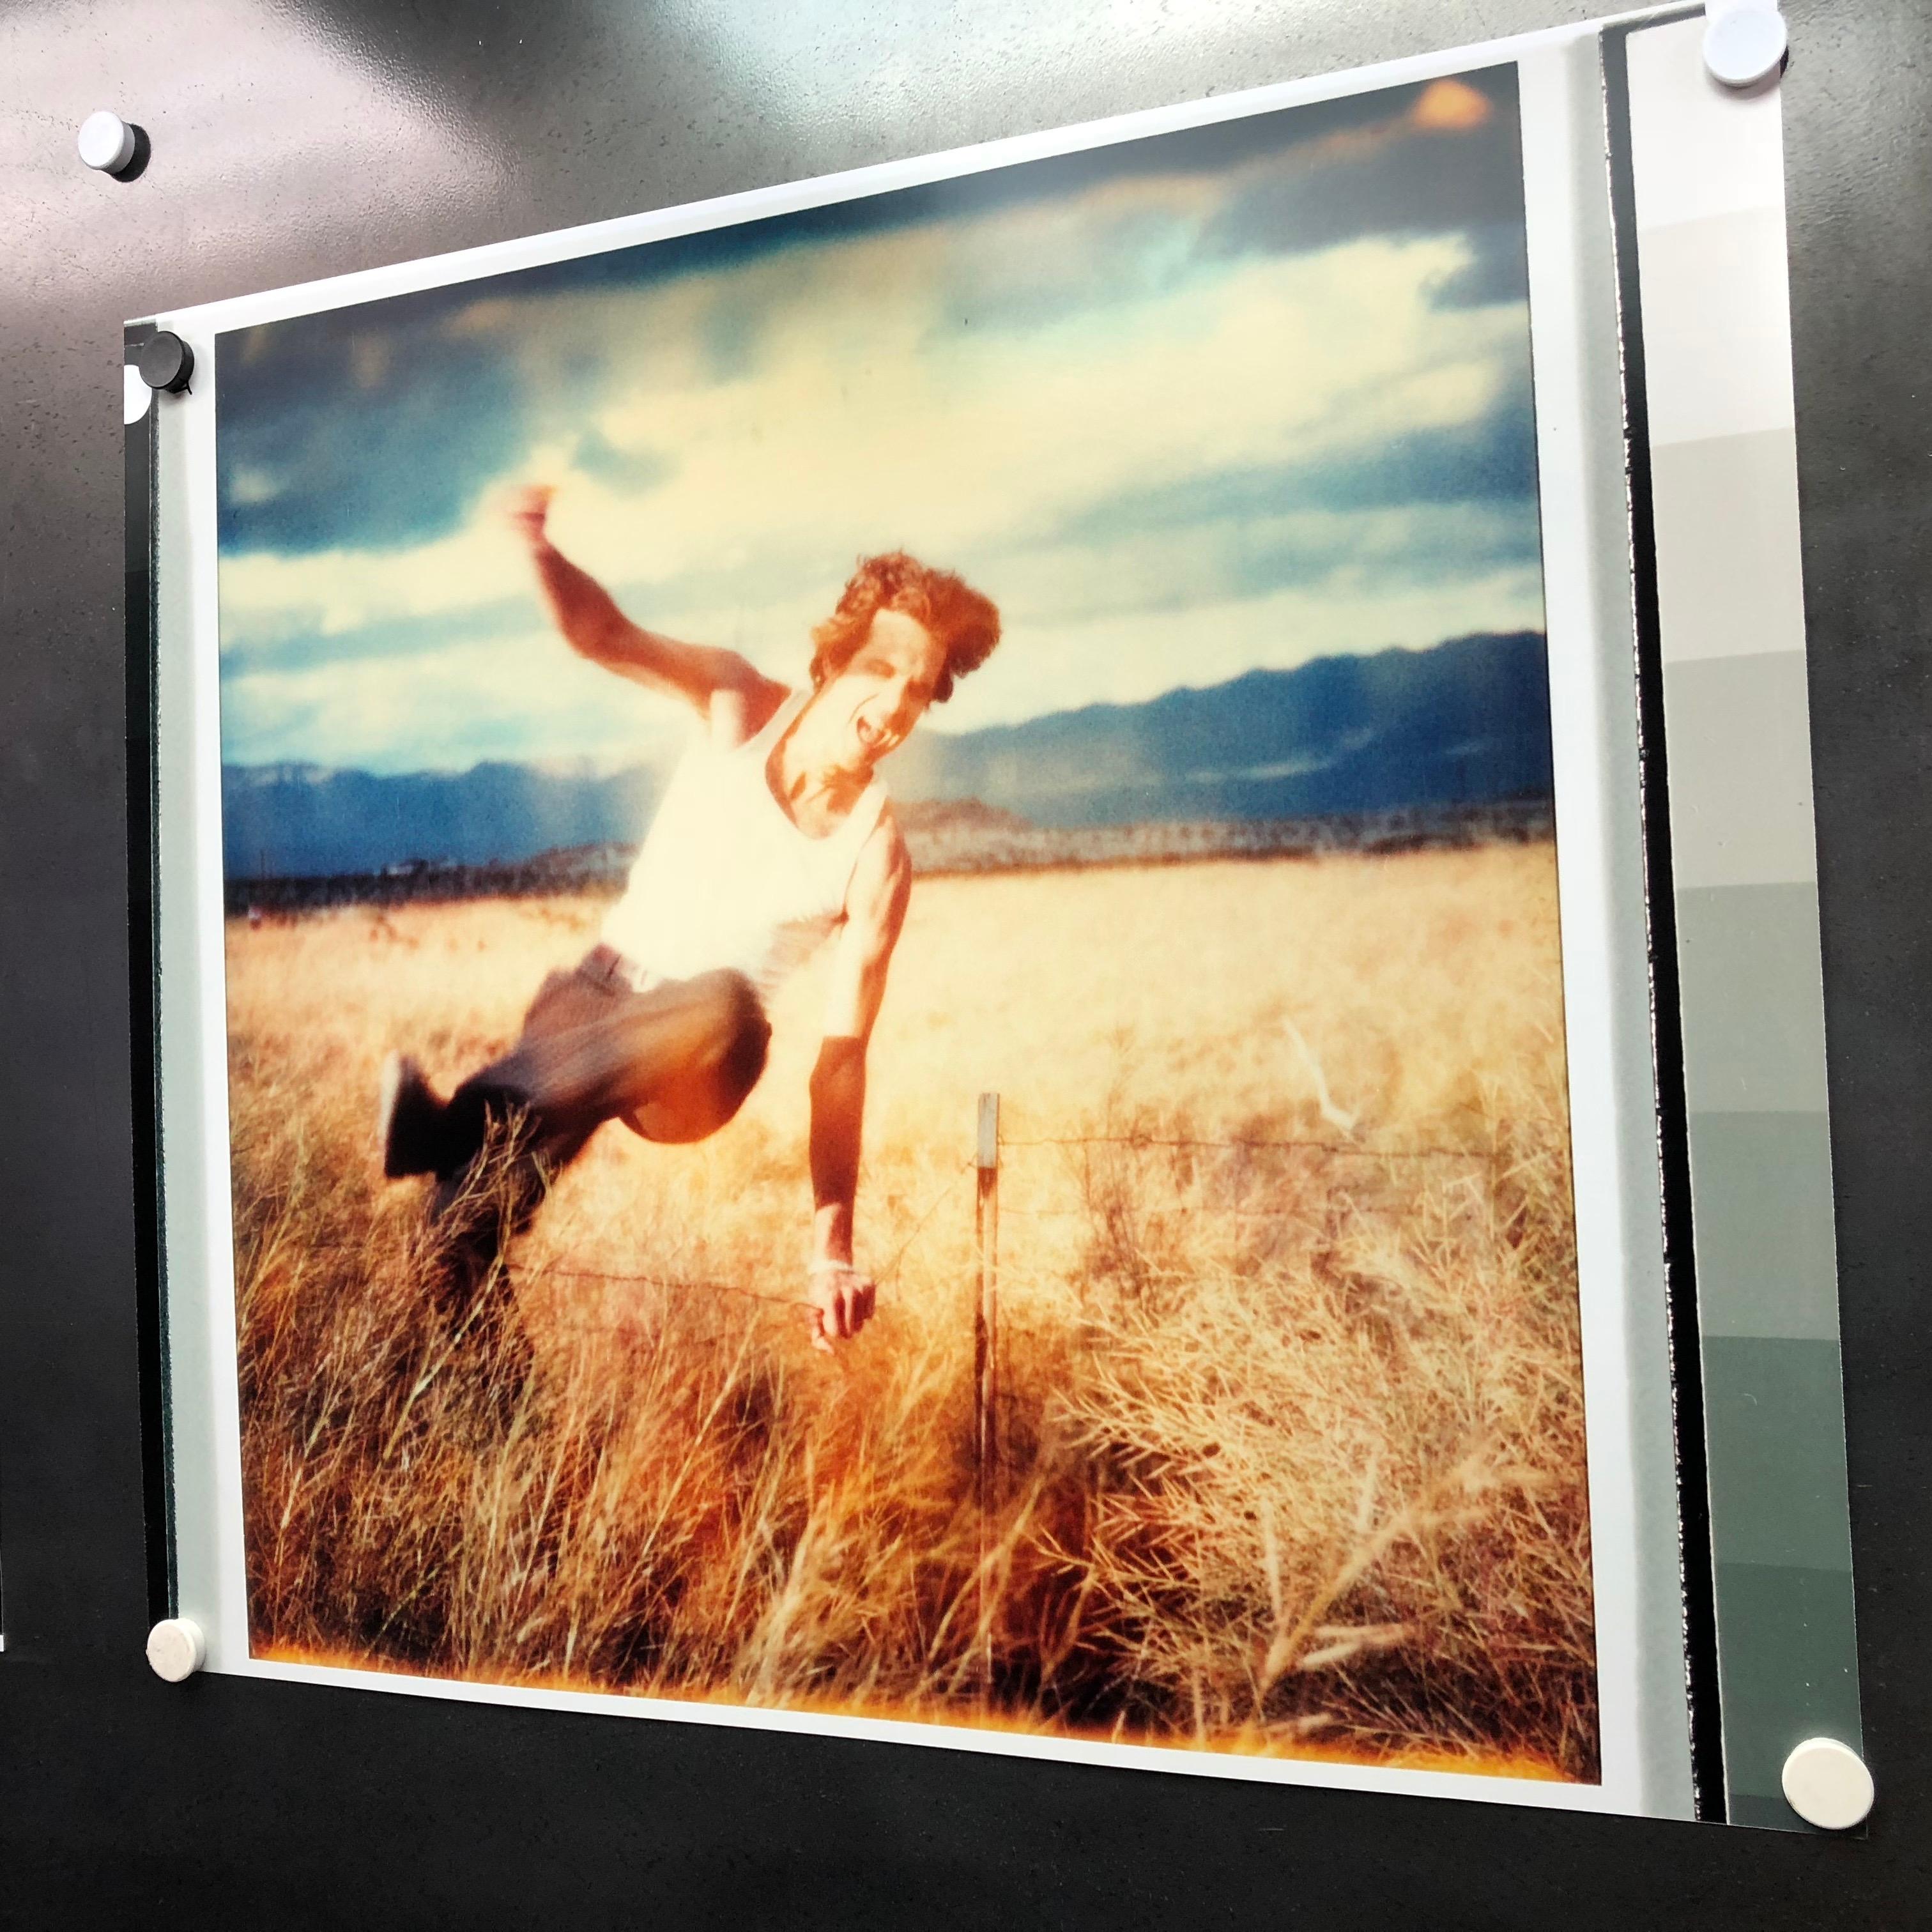 Field of Dreams (Sidewinder) - 2005

80 x 78 cm, 
Edition de 5, 
c-print analogique, imprimé à la main par l'artiste, basé sur le Polaroid, 
Inventaire des artistes 3131.02, 
Non monté

Les situations scintillantes de Stefanie Schneider se déroulent